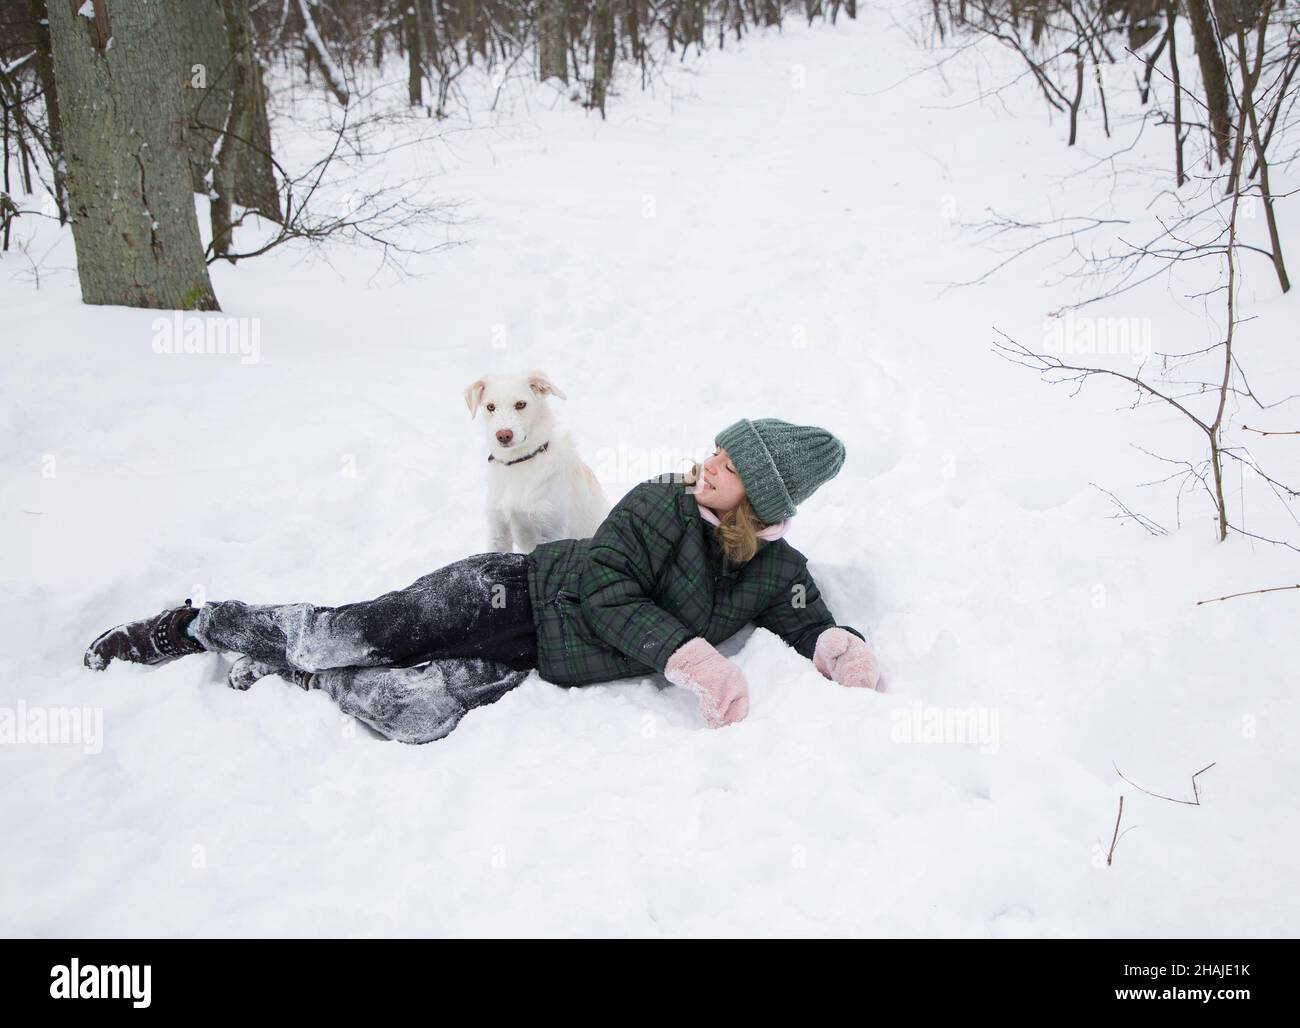 una adolescente de 16-17 años se encuentra en la nieve con un perro blanco. camine con su mascota en la temporada fría de invierno. Diversión con el querido perro. Un estilo de vida activo, alegría siempre Foto de stock